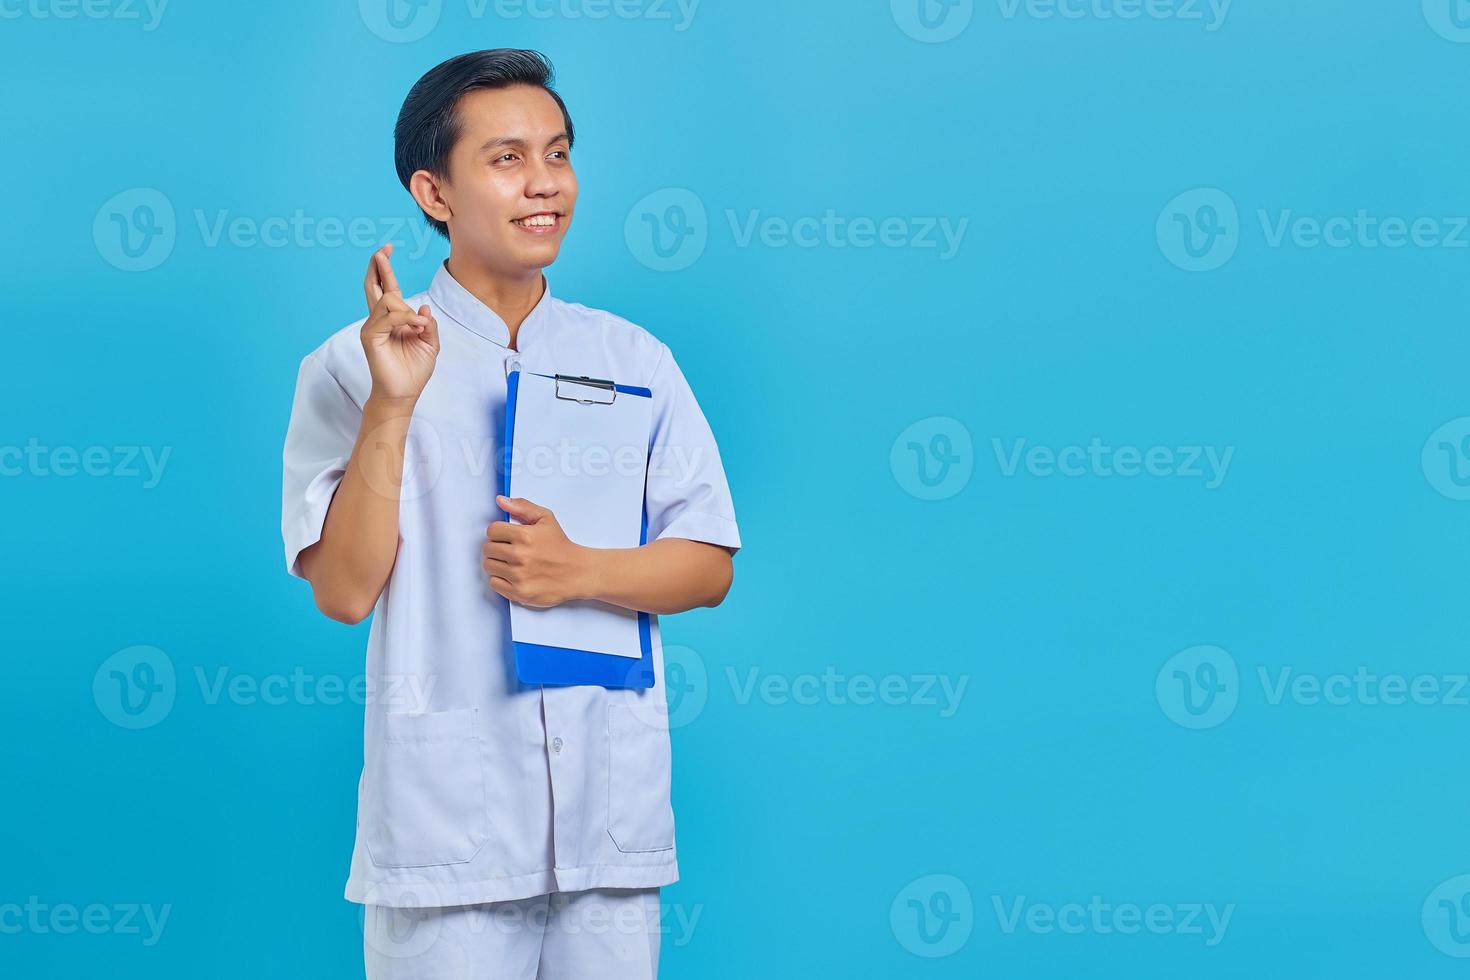 Retrato de feliz joven enfermero asiático cruzando los dedos y mostrando el portapapeles sobre fondo azul. foto